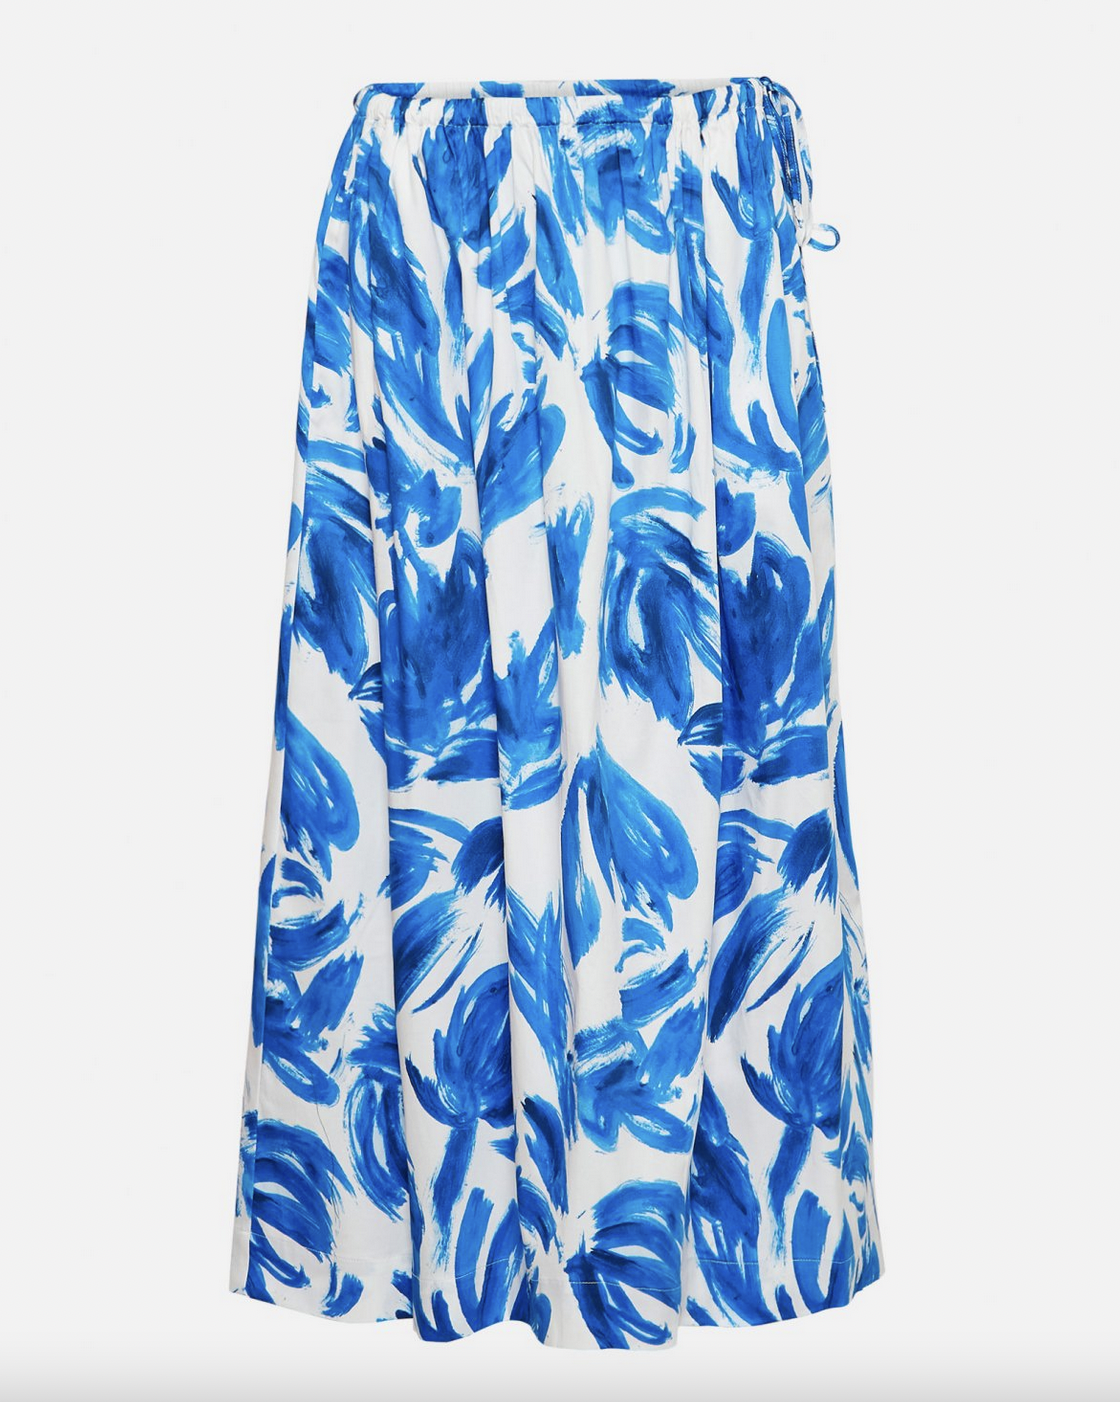 MSCH Copenhagen Sinaia Diselle Skirt P Blue Abstract